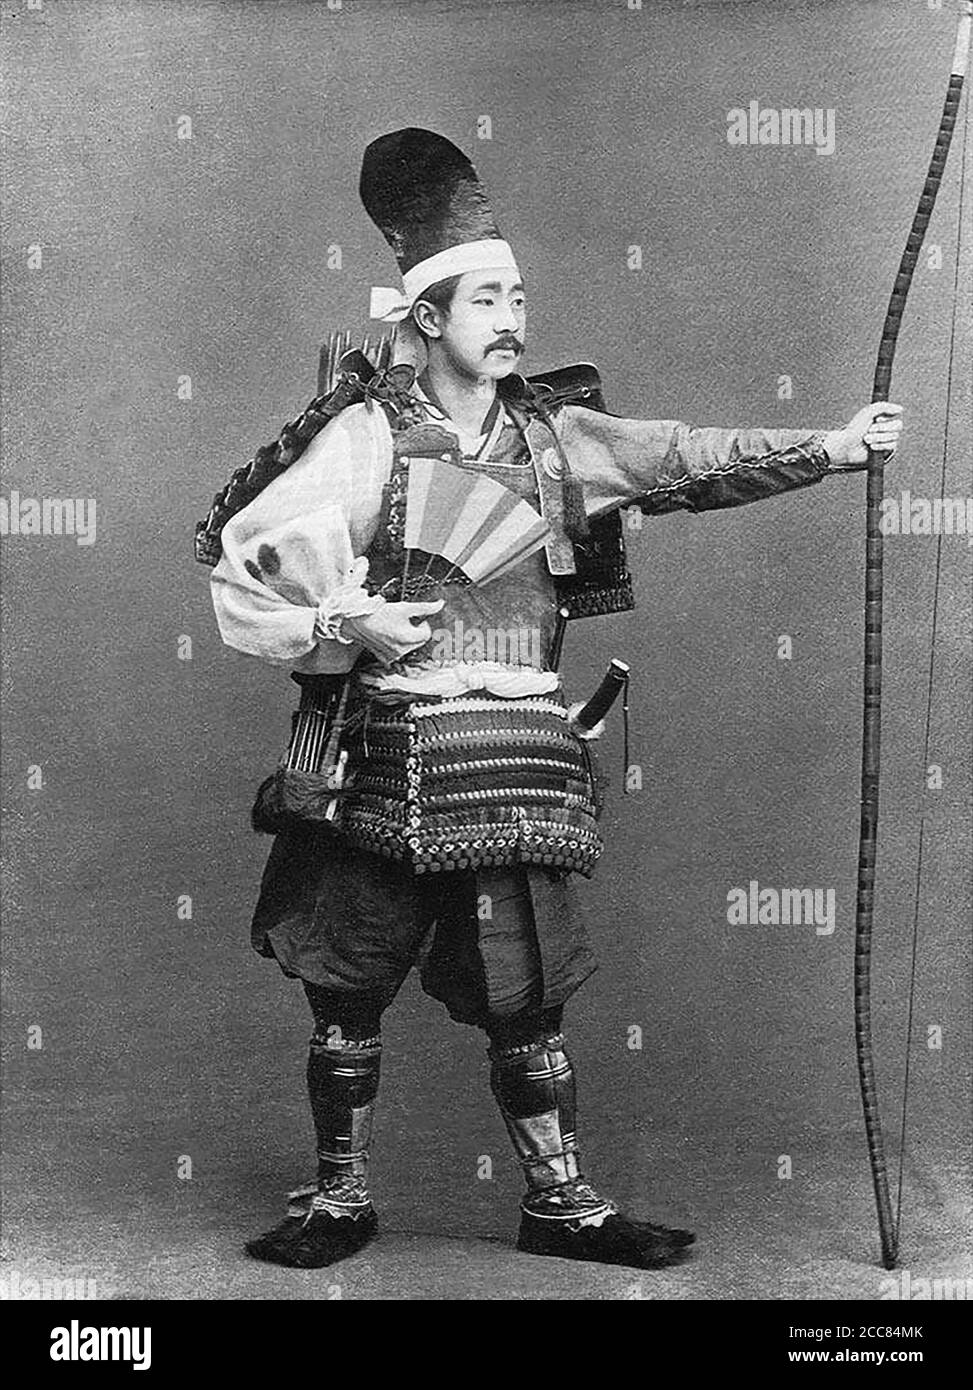 Japan: 'Ein General der Fujiwara Epoche'. Chemigraph aus der Serie 'Military Costumes in Old Japan' von Kazumasa Ogawa (1860-1929), 1893, Tokio. Ogawa Kazumasa, auch bekannt als Ogawa Kazuma oder Ogawa Isshin, war ein japanischer Fotograf, Chemigraph, Drucker und Verleger der Meiji-Ära. Er war ein Pionier im photomechanischen Druck und der Fotografie und wurde in den Samurai-Clan von Matsudaira geboren, wo er im Alter von 15 Jahren Englisch und Fotografie studierte. Stockfoto